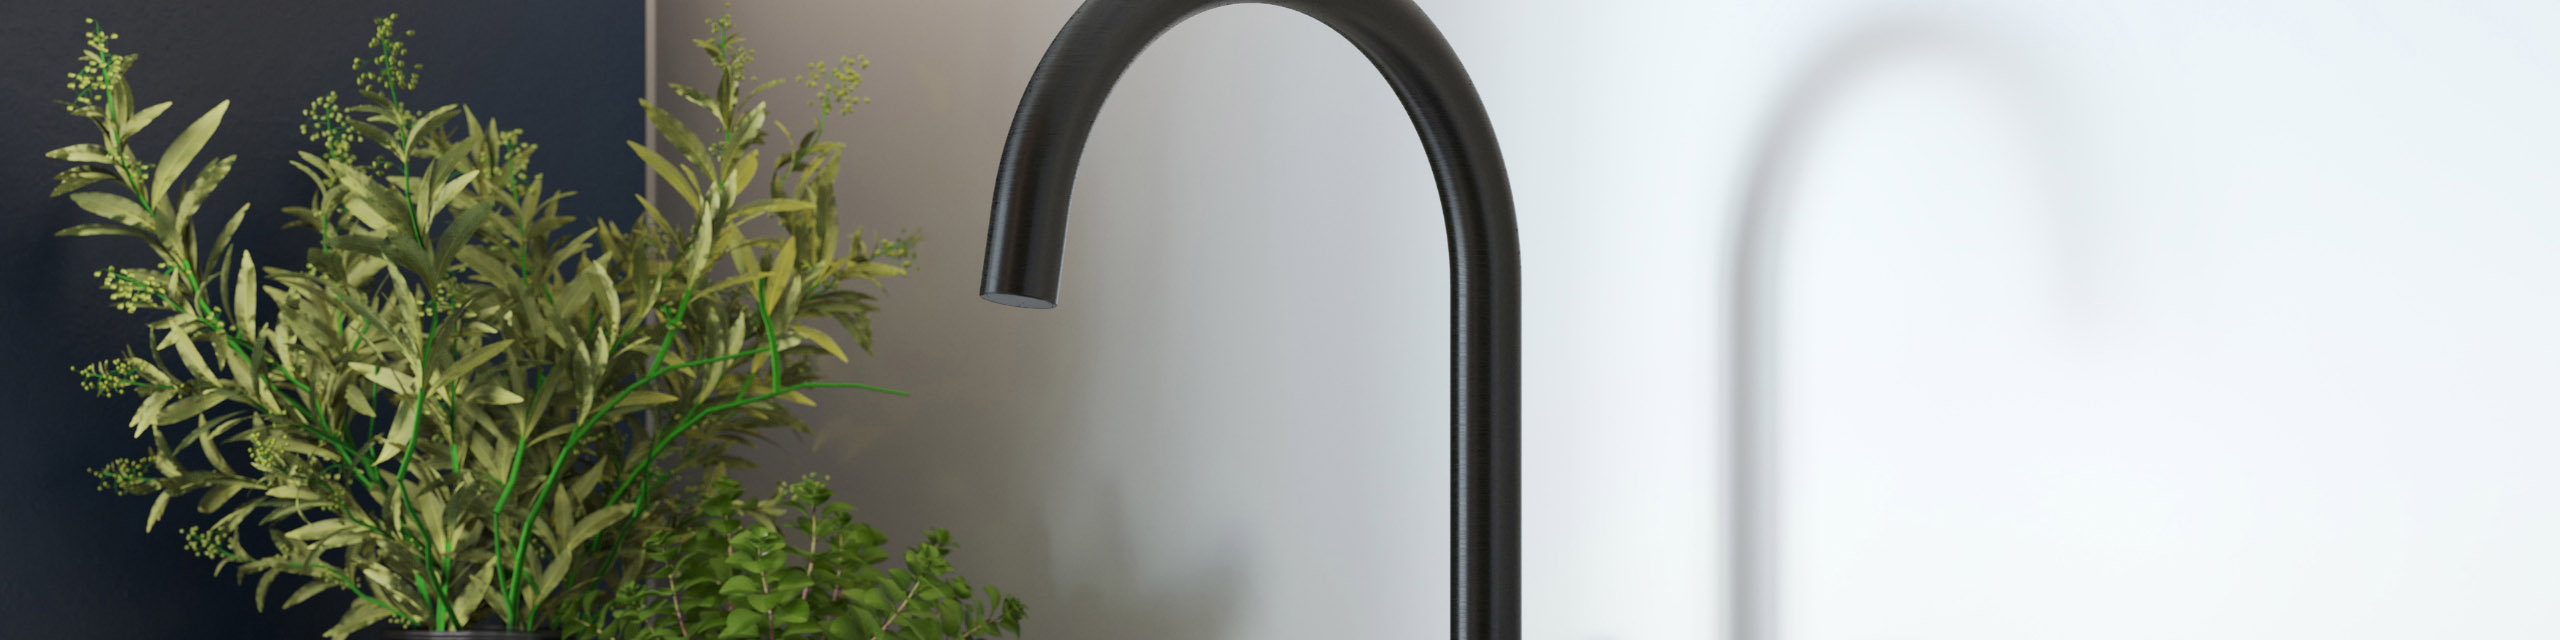 Noa black dual lever kitchen tap